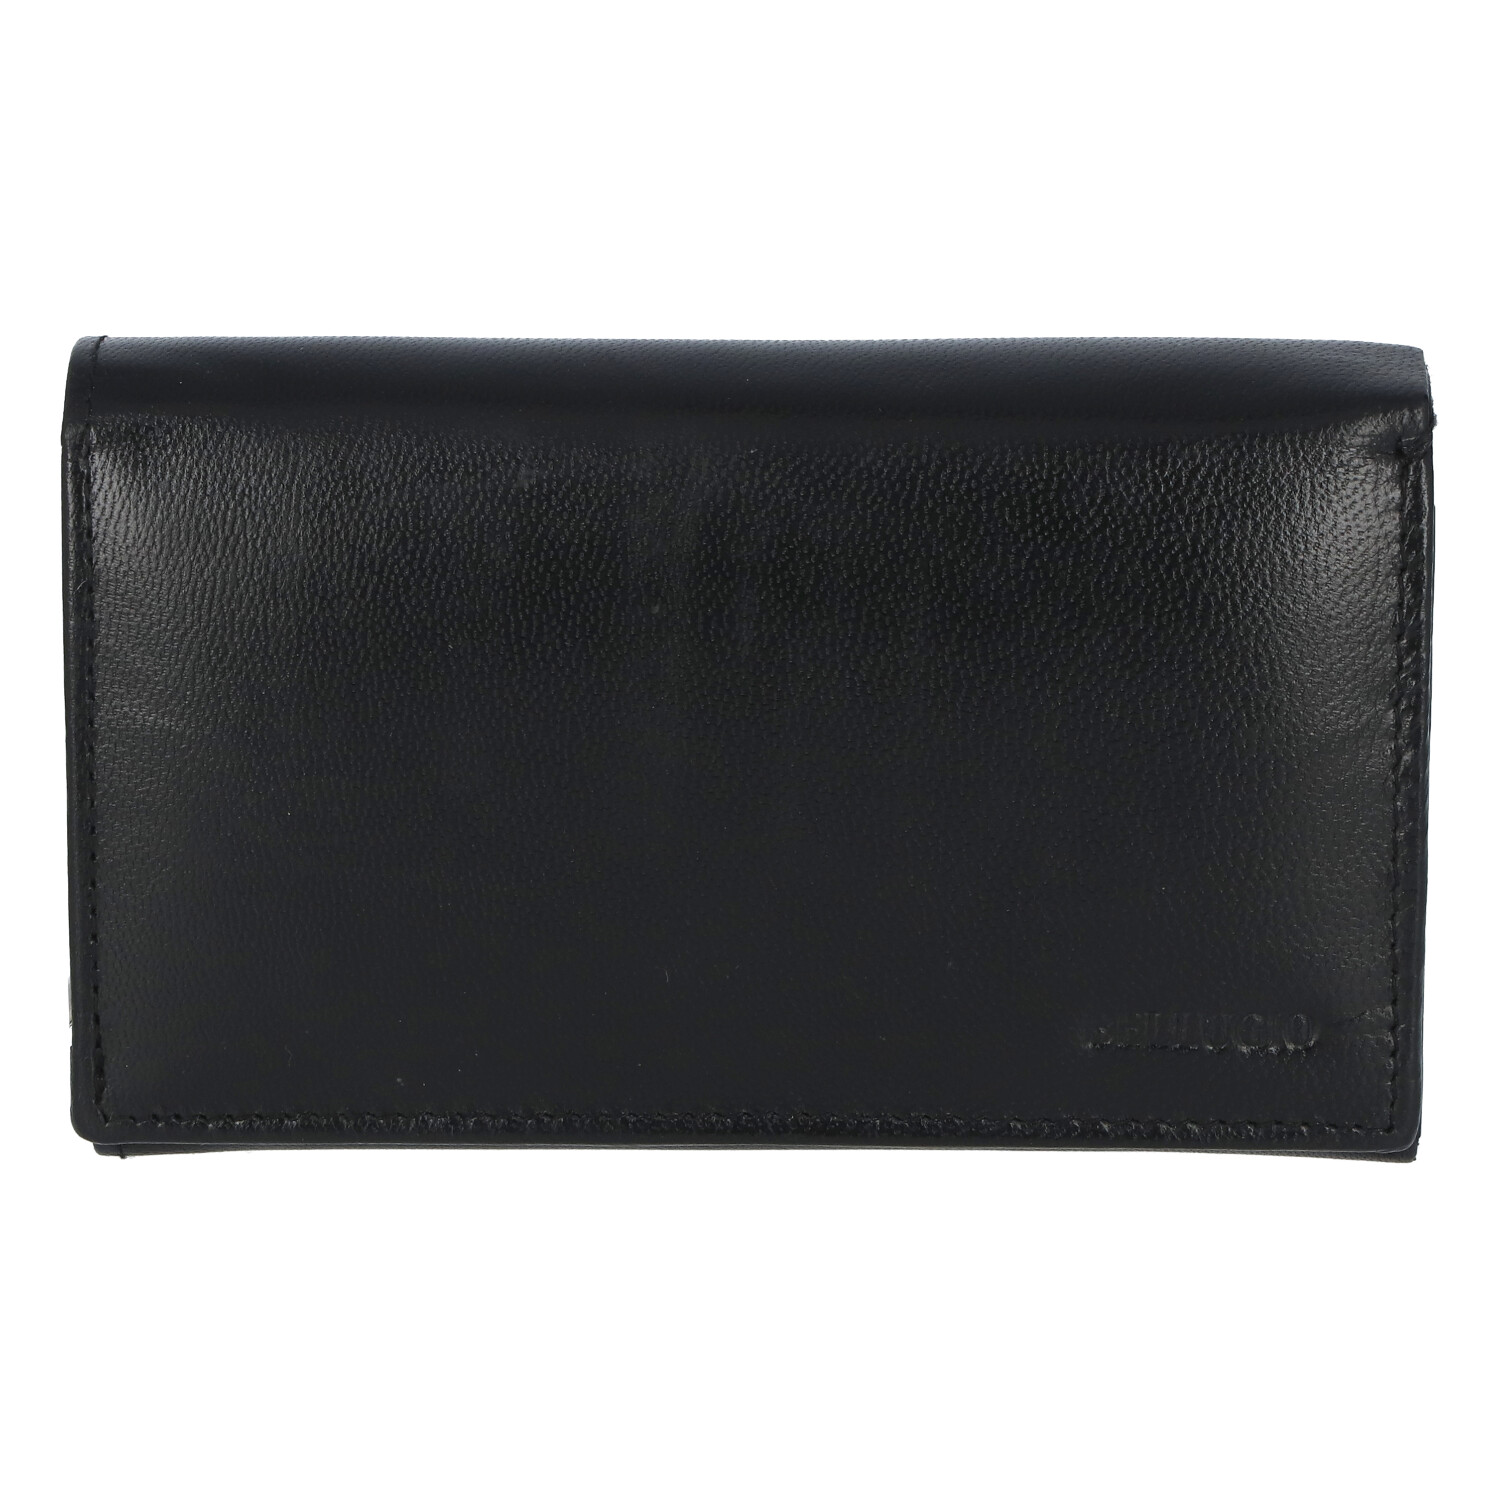 Dámská kožená peněženka černá - Bellugio Maveris